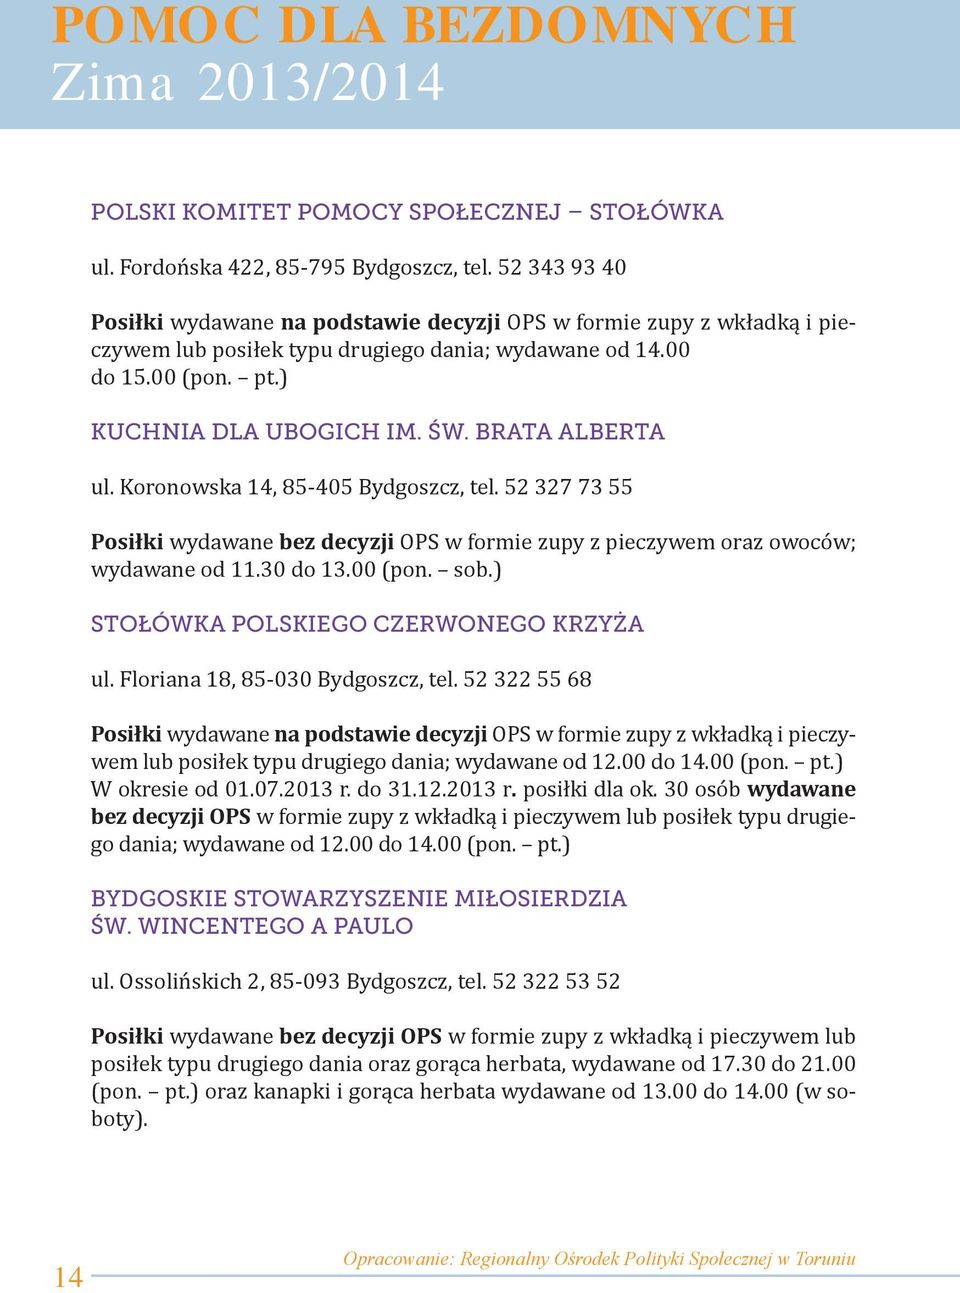 BRATA ALBERTA ul. Koronowska 14, 85-405 Bydgoszcz, tel. 52 327 73 55 Posiłki wydawane bez decyzji OPS w formie zupy z pieczywem oraz owoców; wydawane od 11.30 do 13.00 (pon. sob.